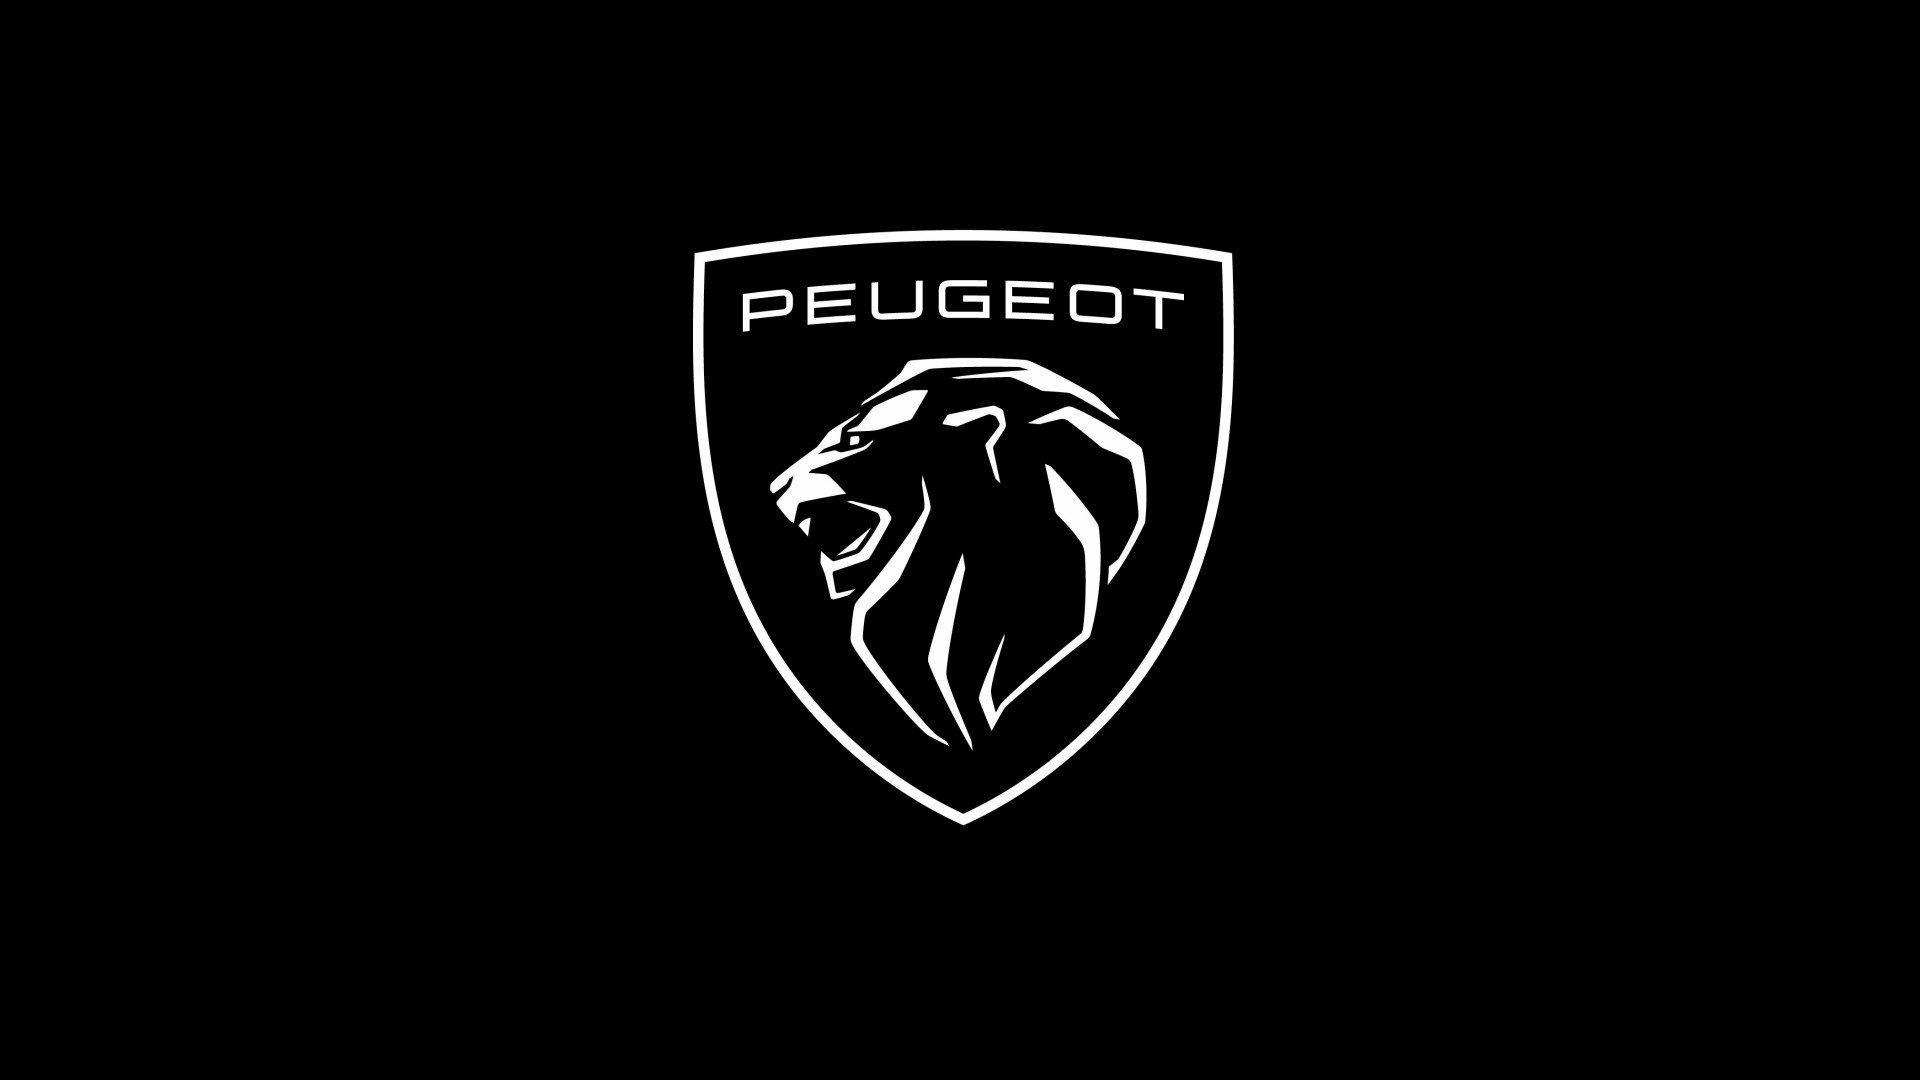 Peugeot presenta su undécimo logotipo empresarial